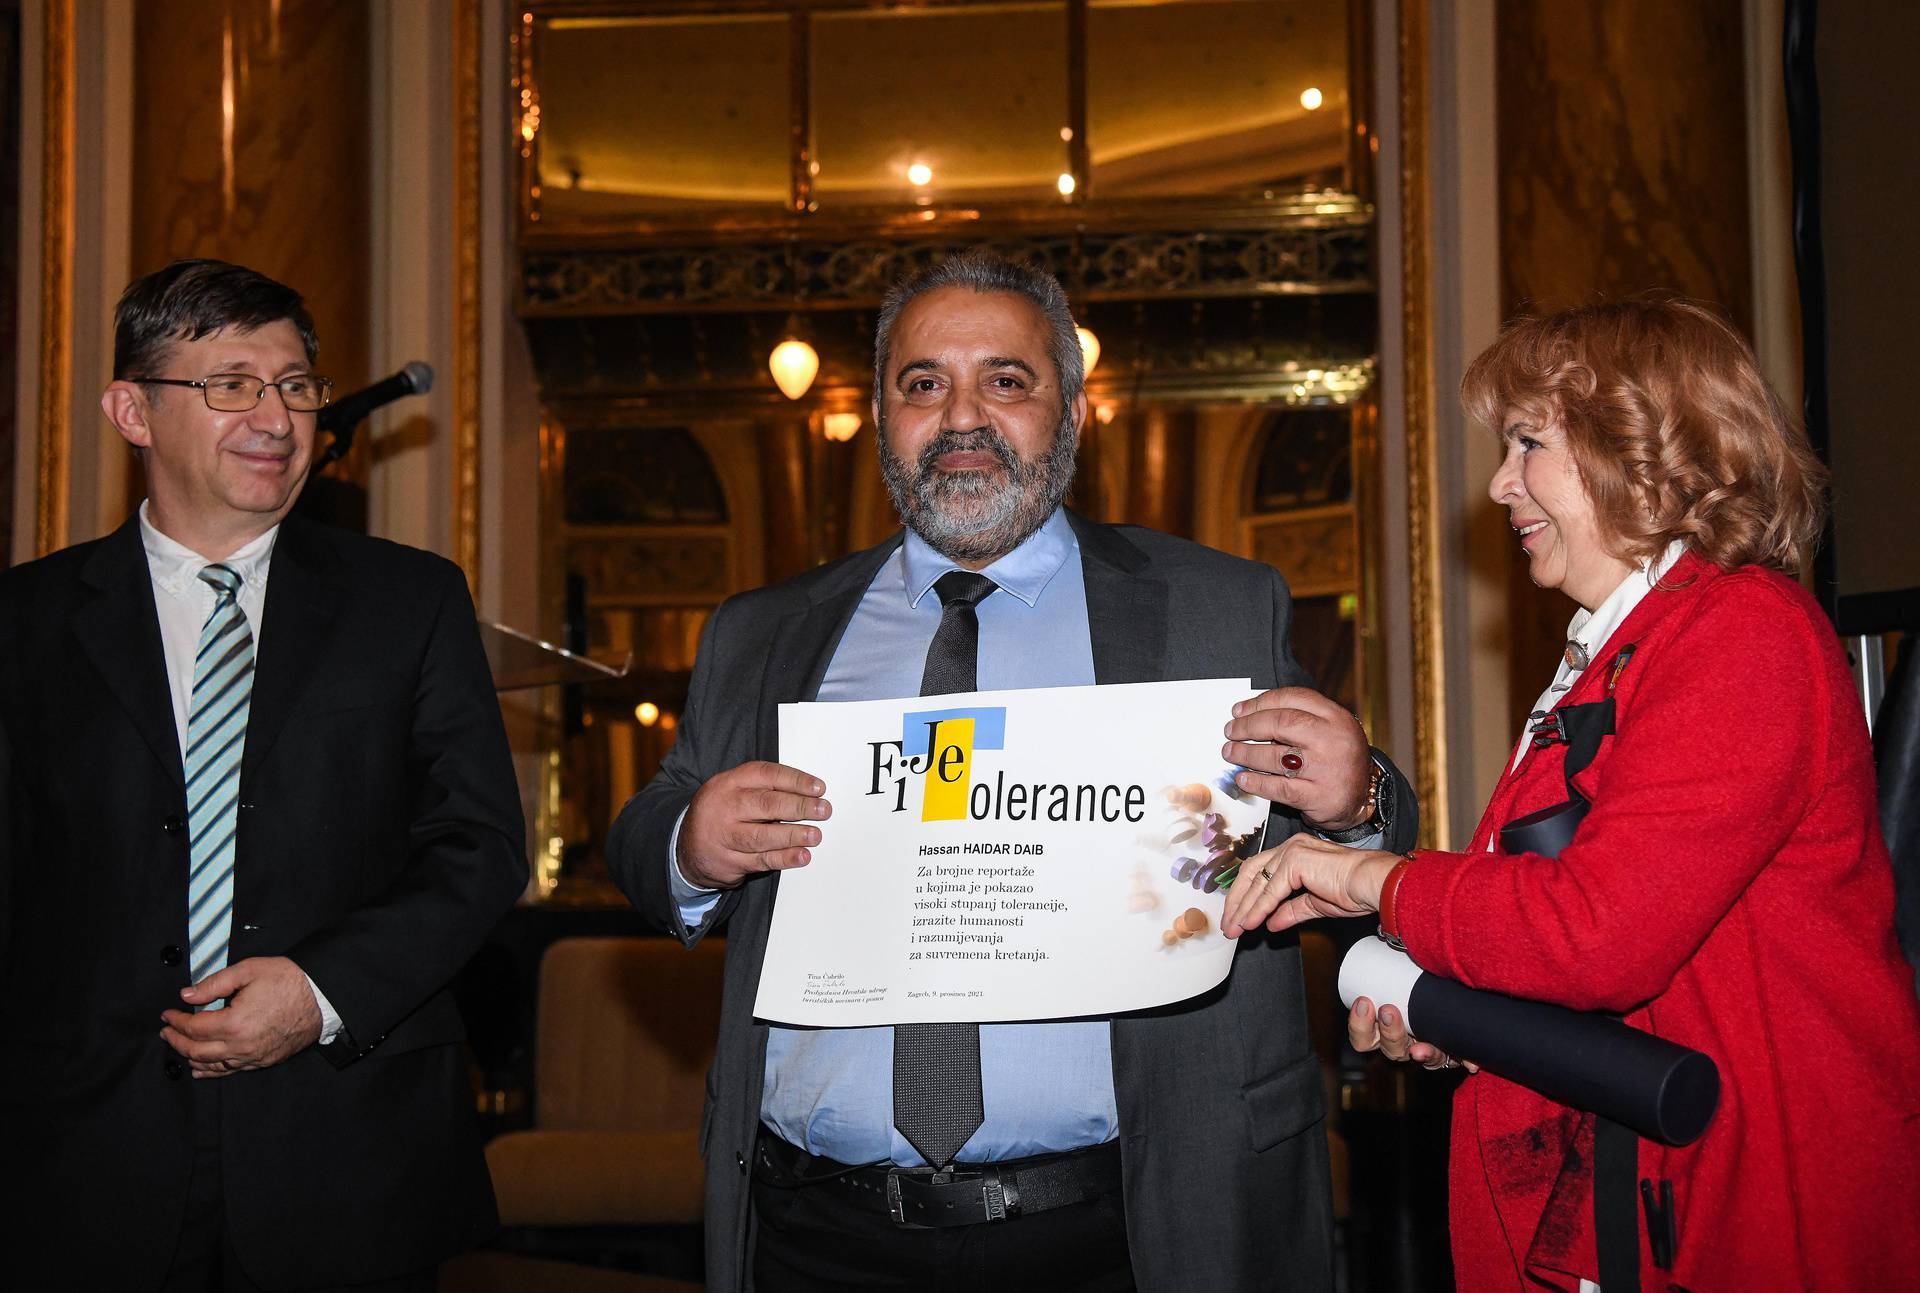 Zagreb: Novinar Večernjeg lista Hassan Haidar Diab dobio je nagradu Fijet Tolerance